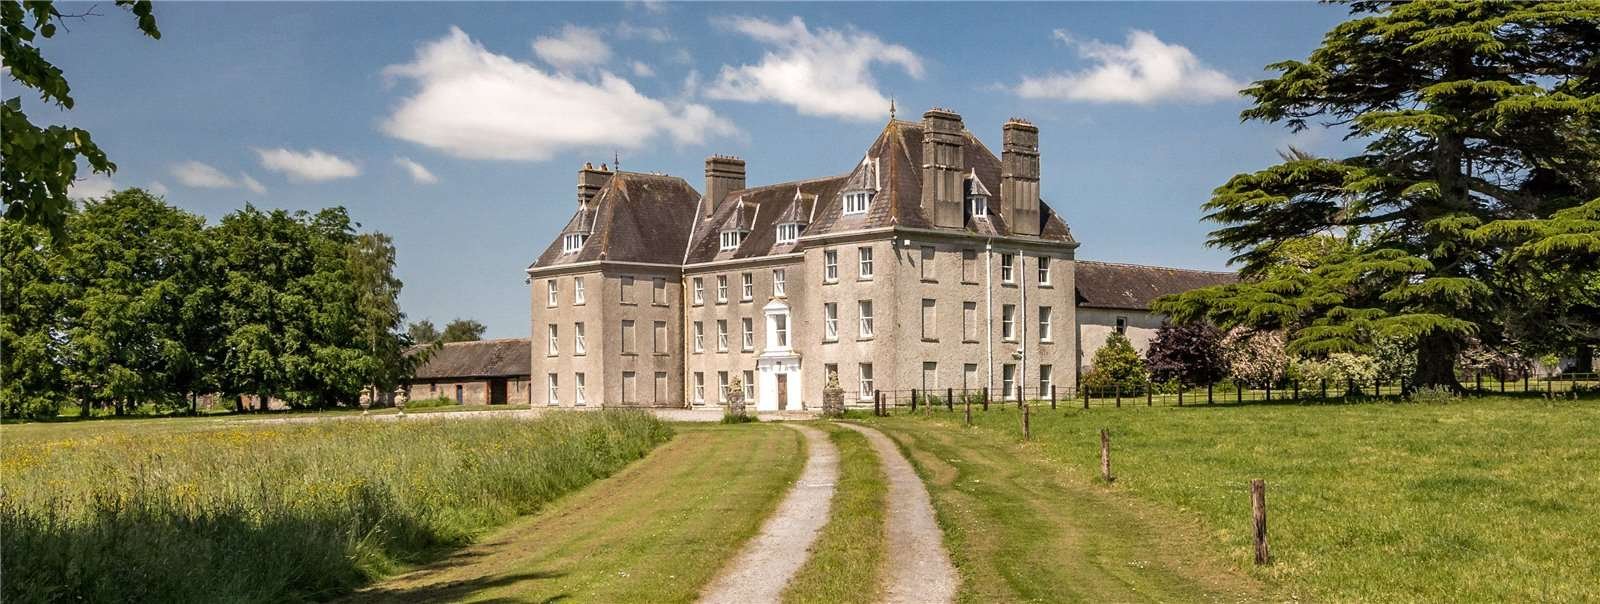 Francis York Rare 750-Acre Irish Estate With 17th Century Manor House  30.jpg